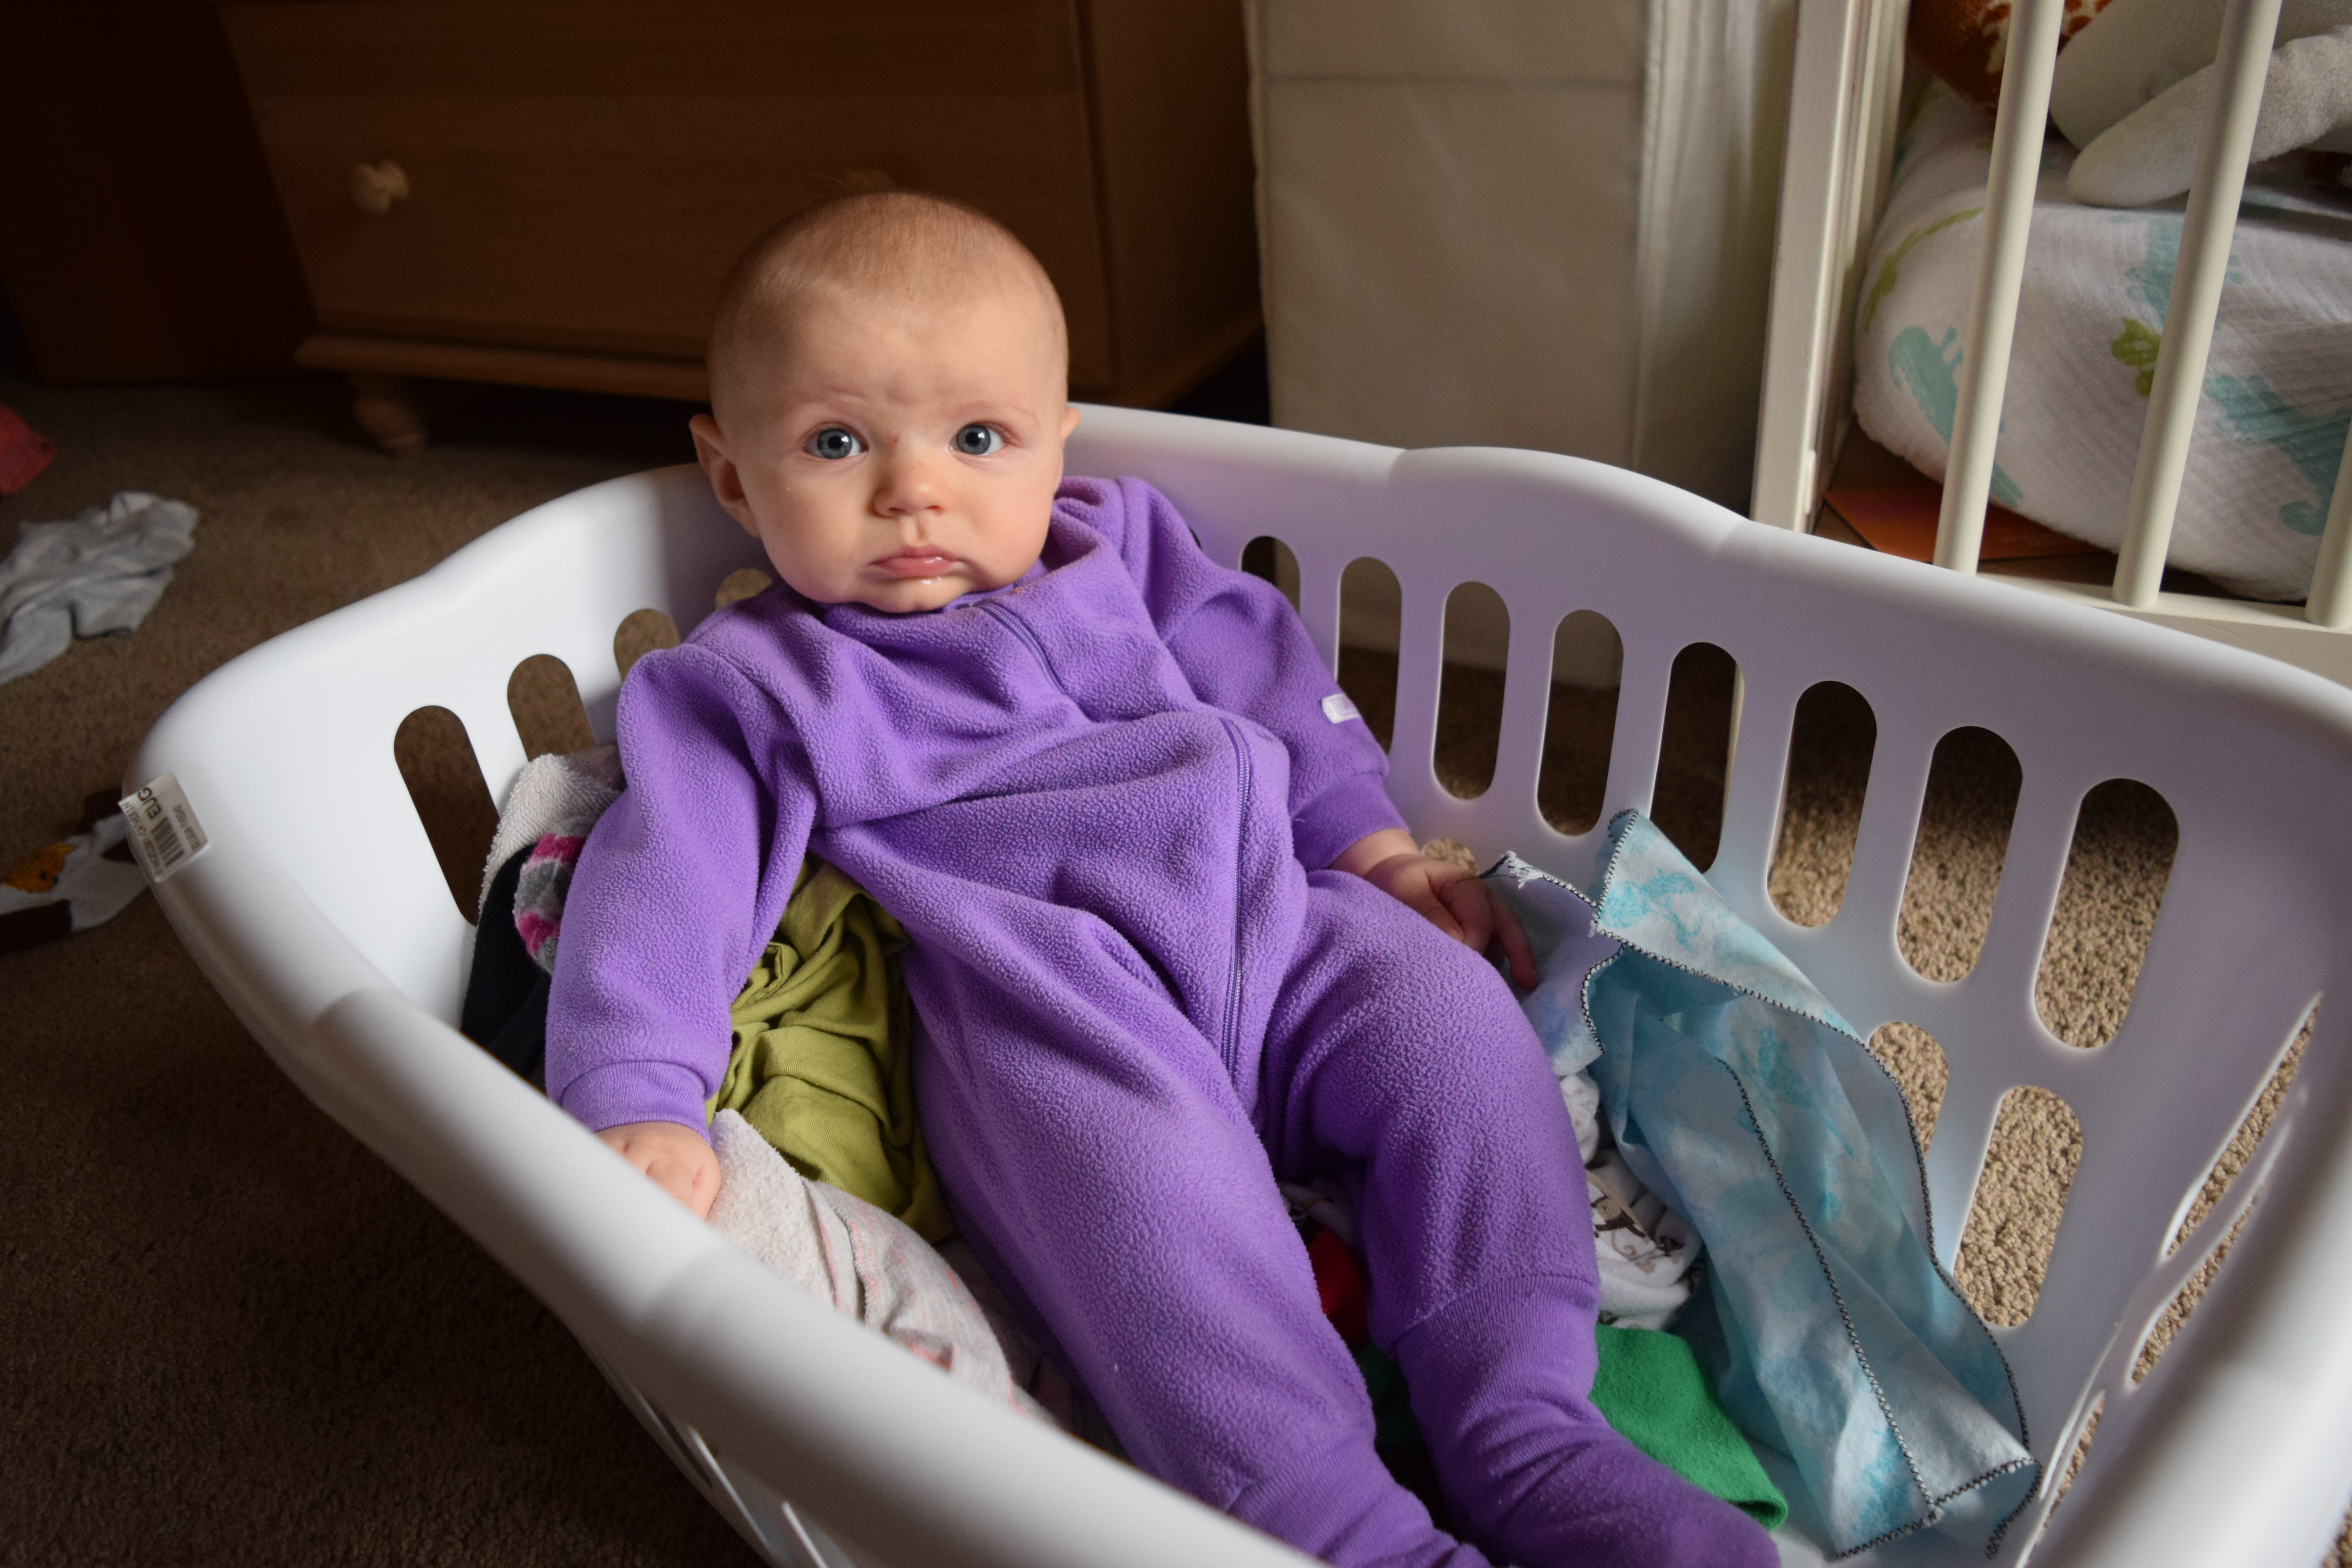 Baby laundry basket